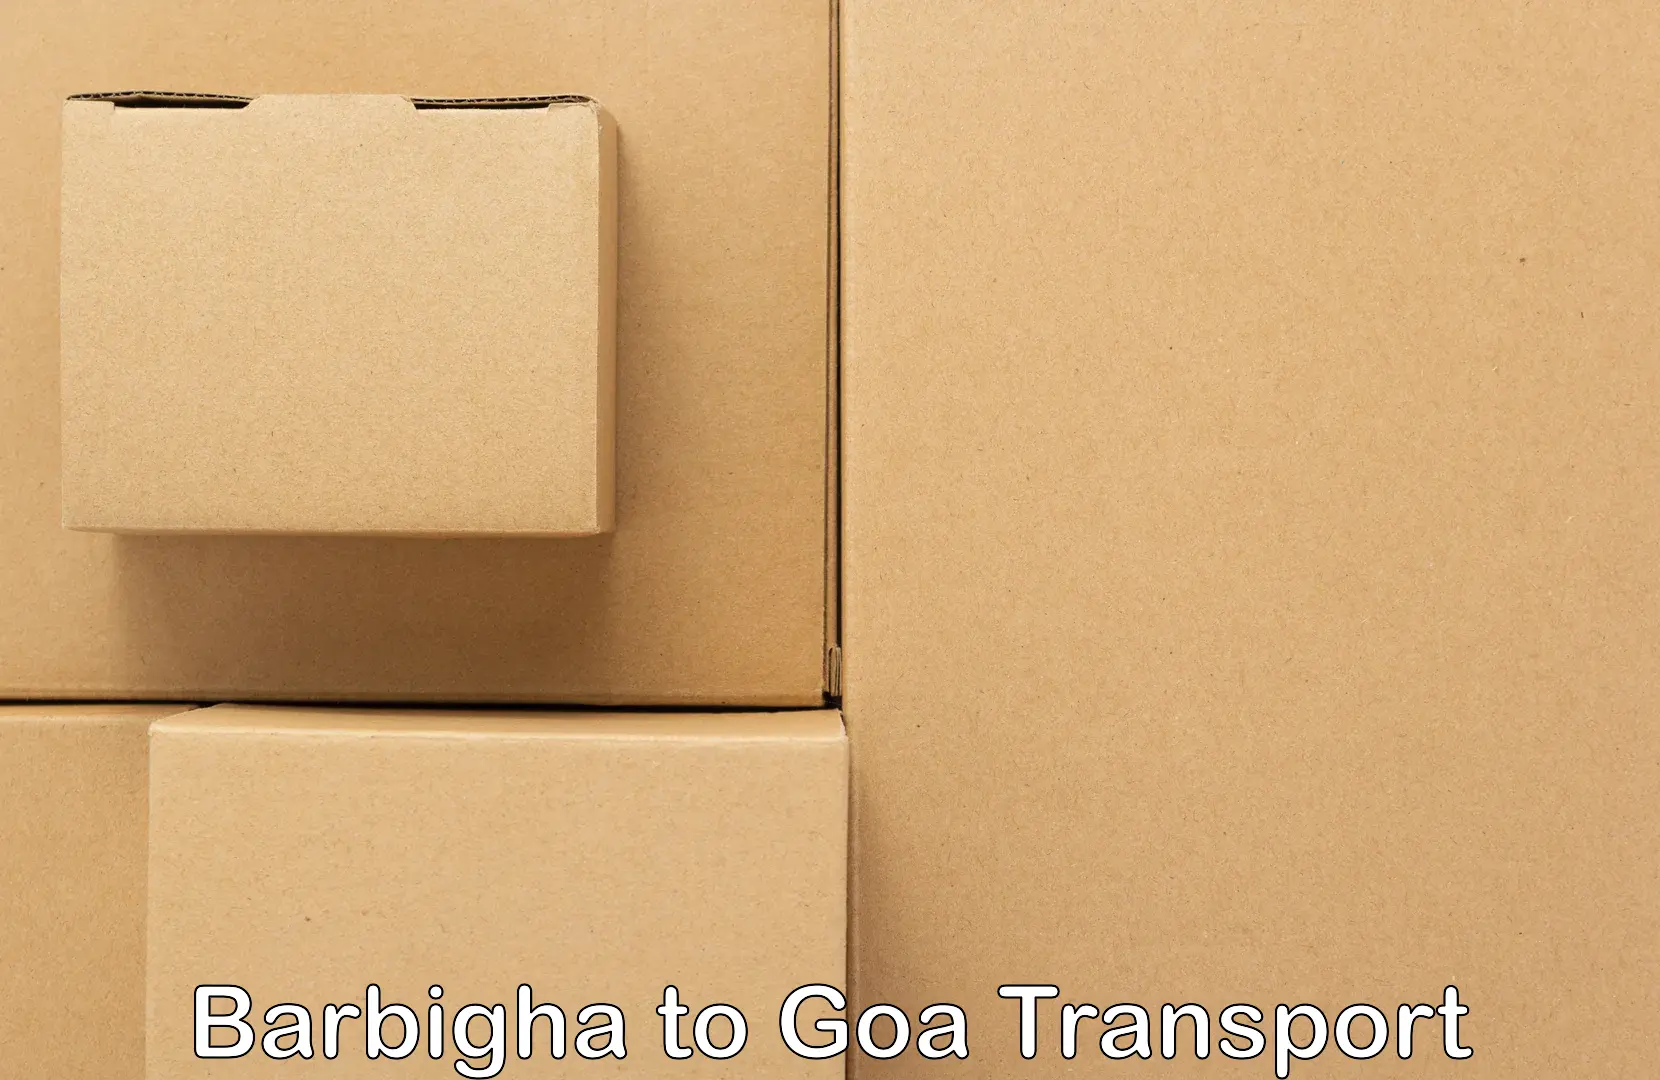 Nearest transport service Barbigha to Vasco da Gama